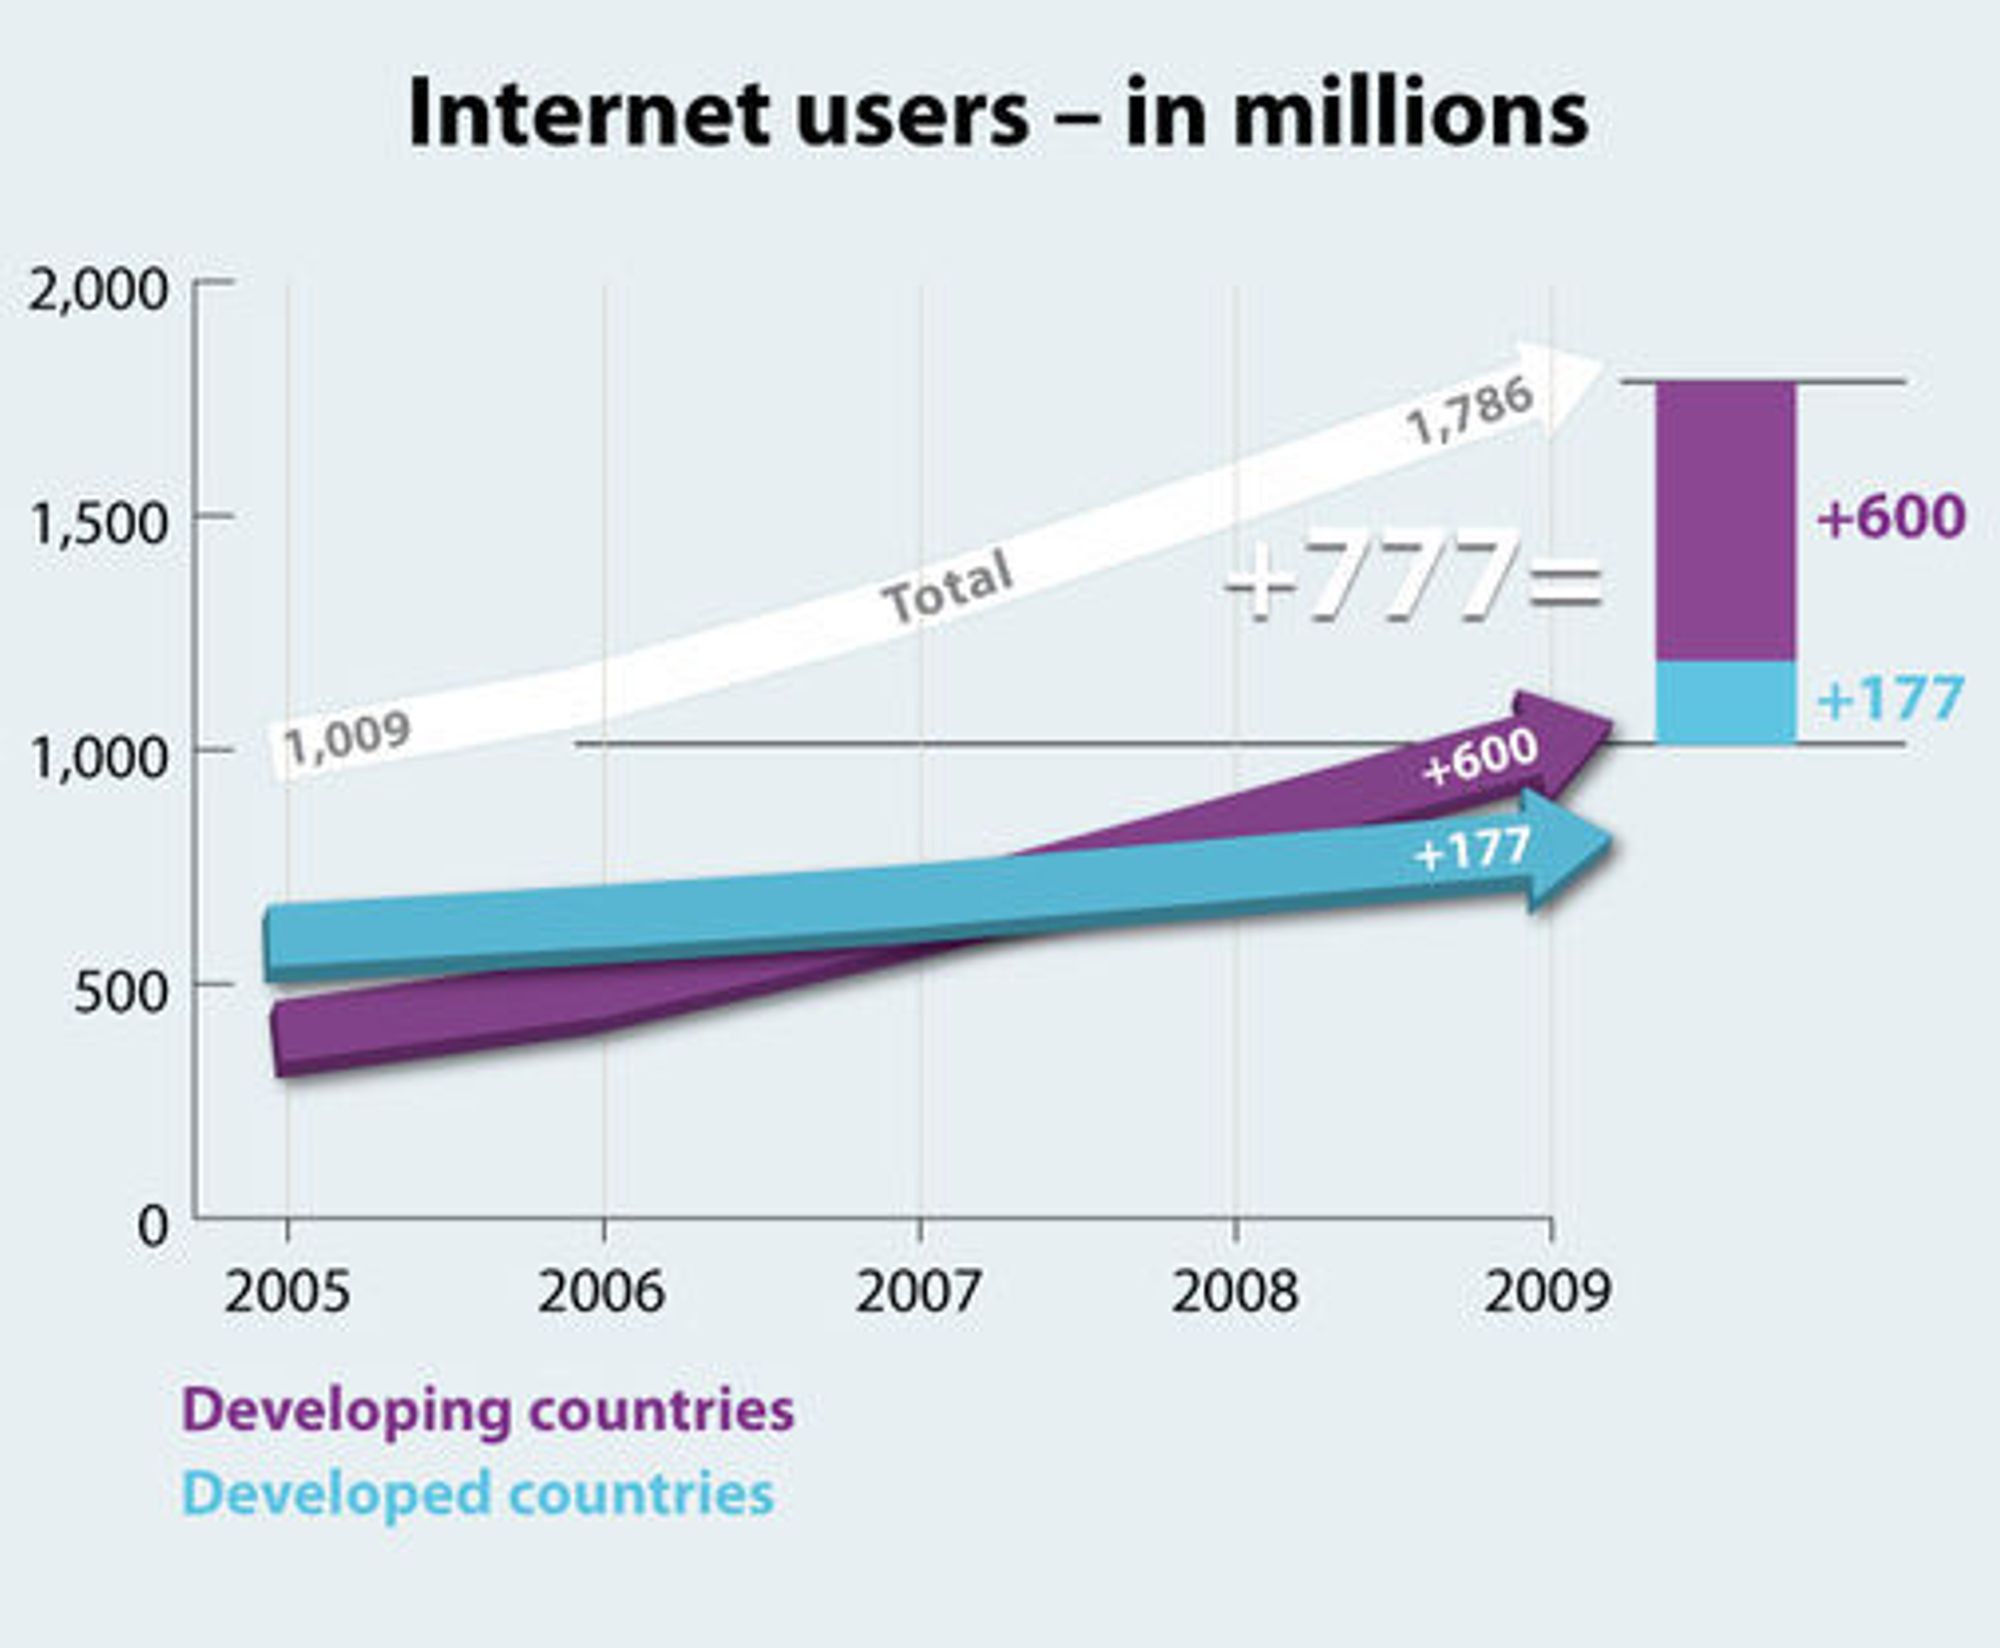 ITU er bekymret over den svake veksten i antall nettbrukere i fattige land de siste årene.